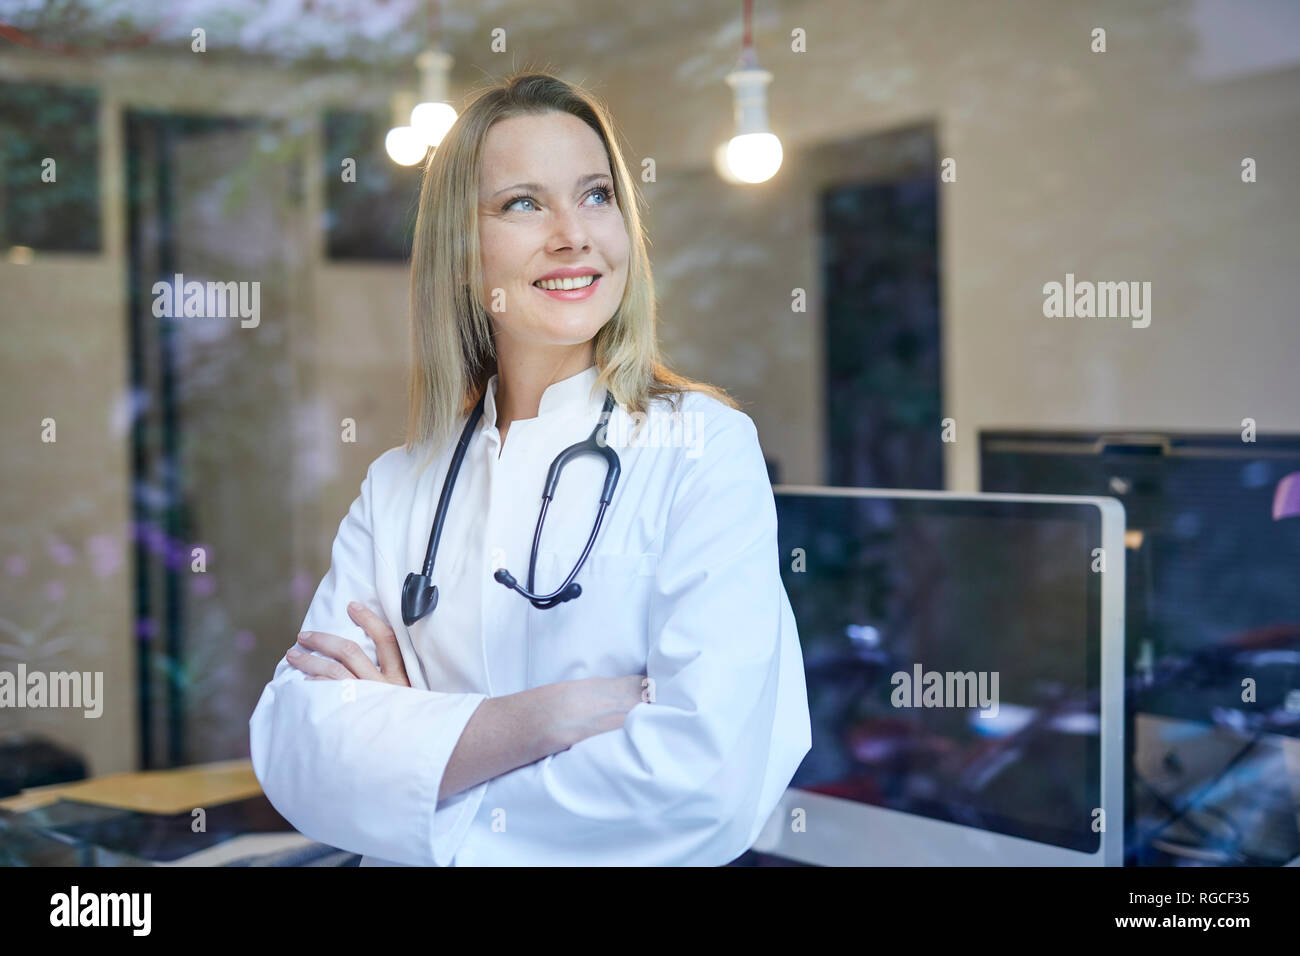 Smiling female doctor with stethoscope derrière la vitre Banque D'Images